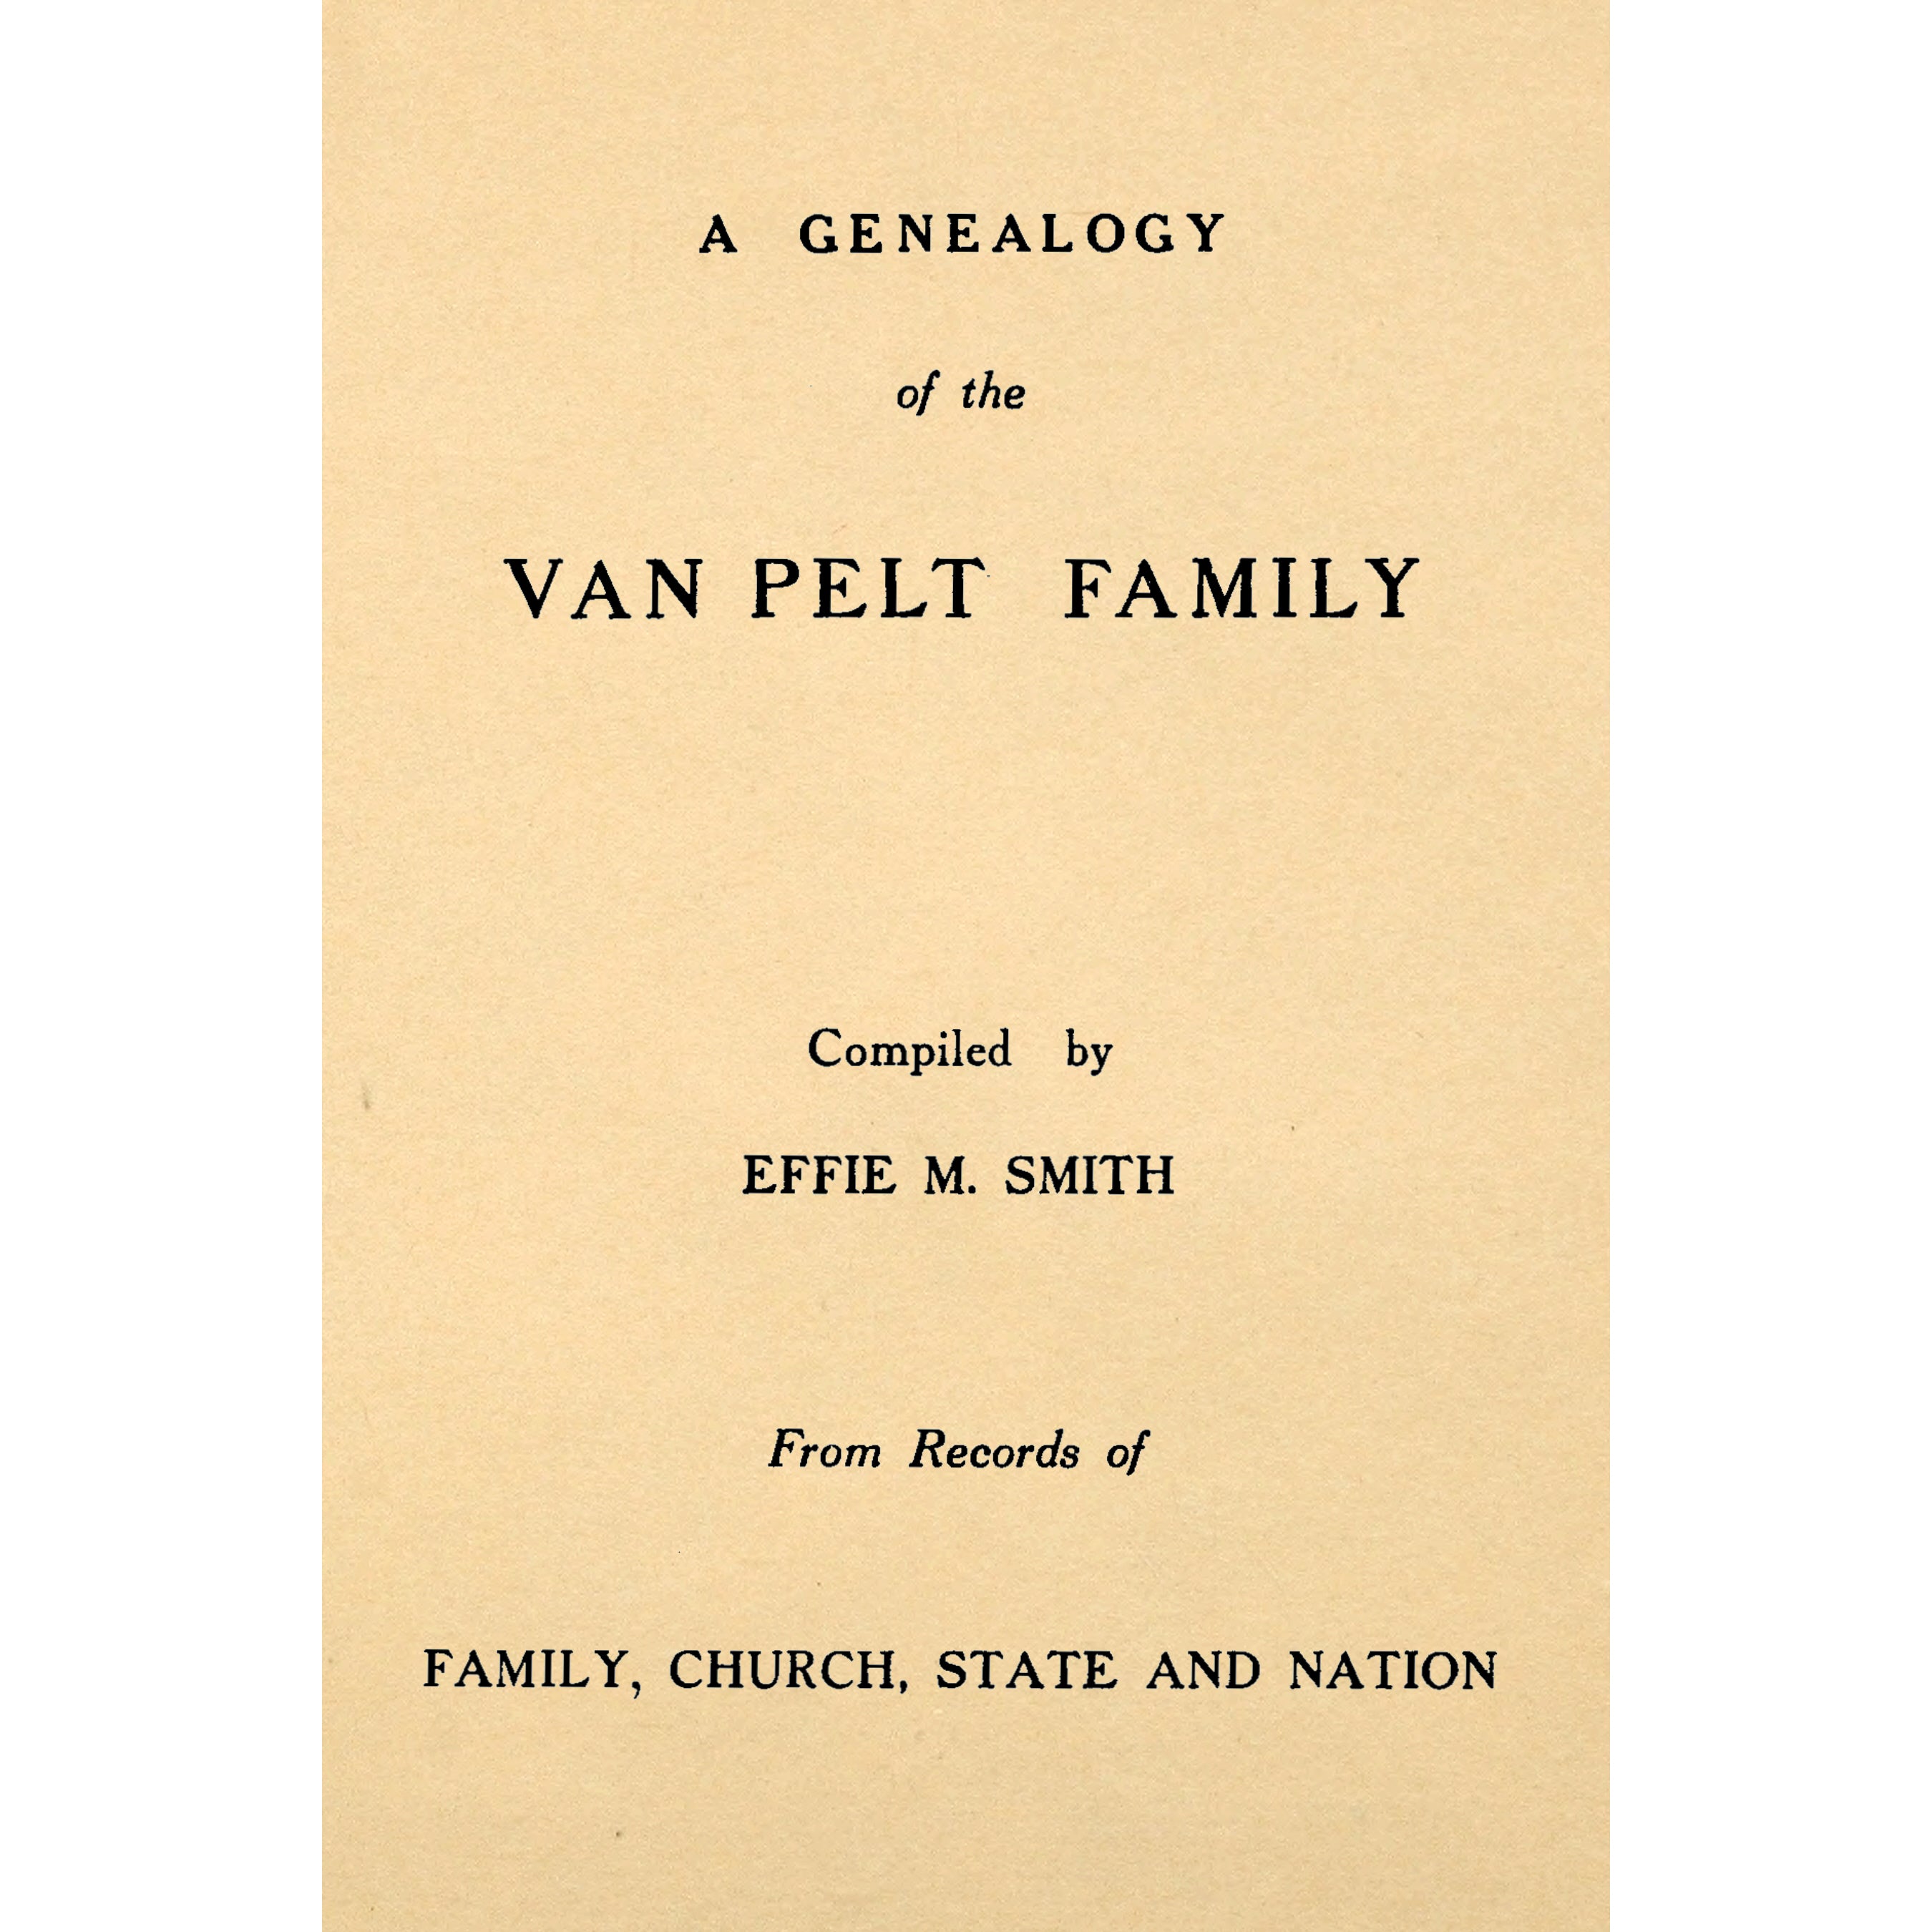 A Genealogy of the Van Pelt Family